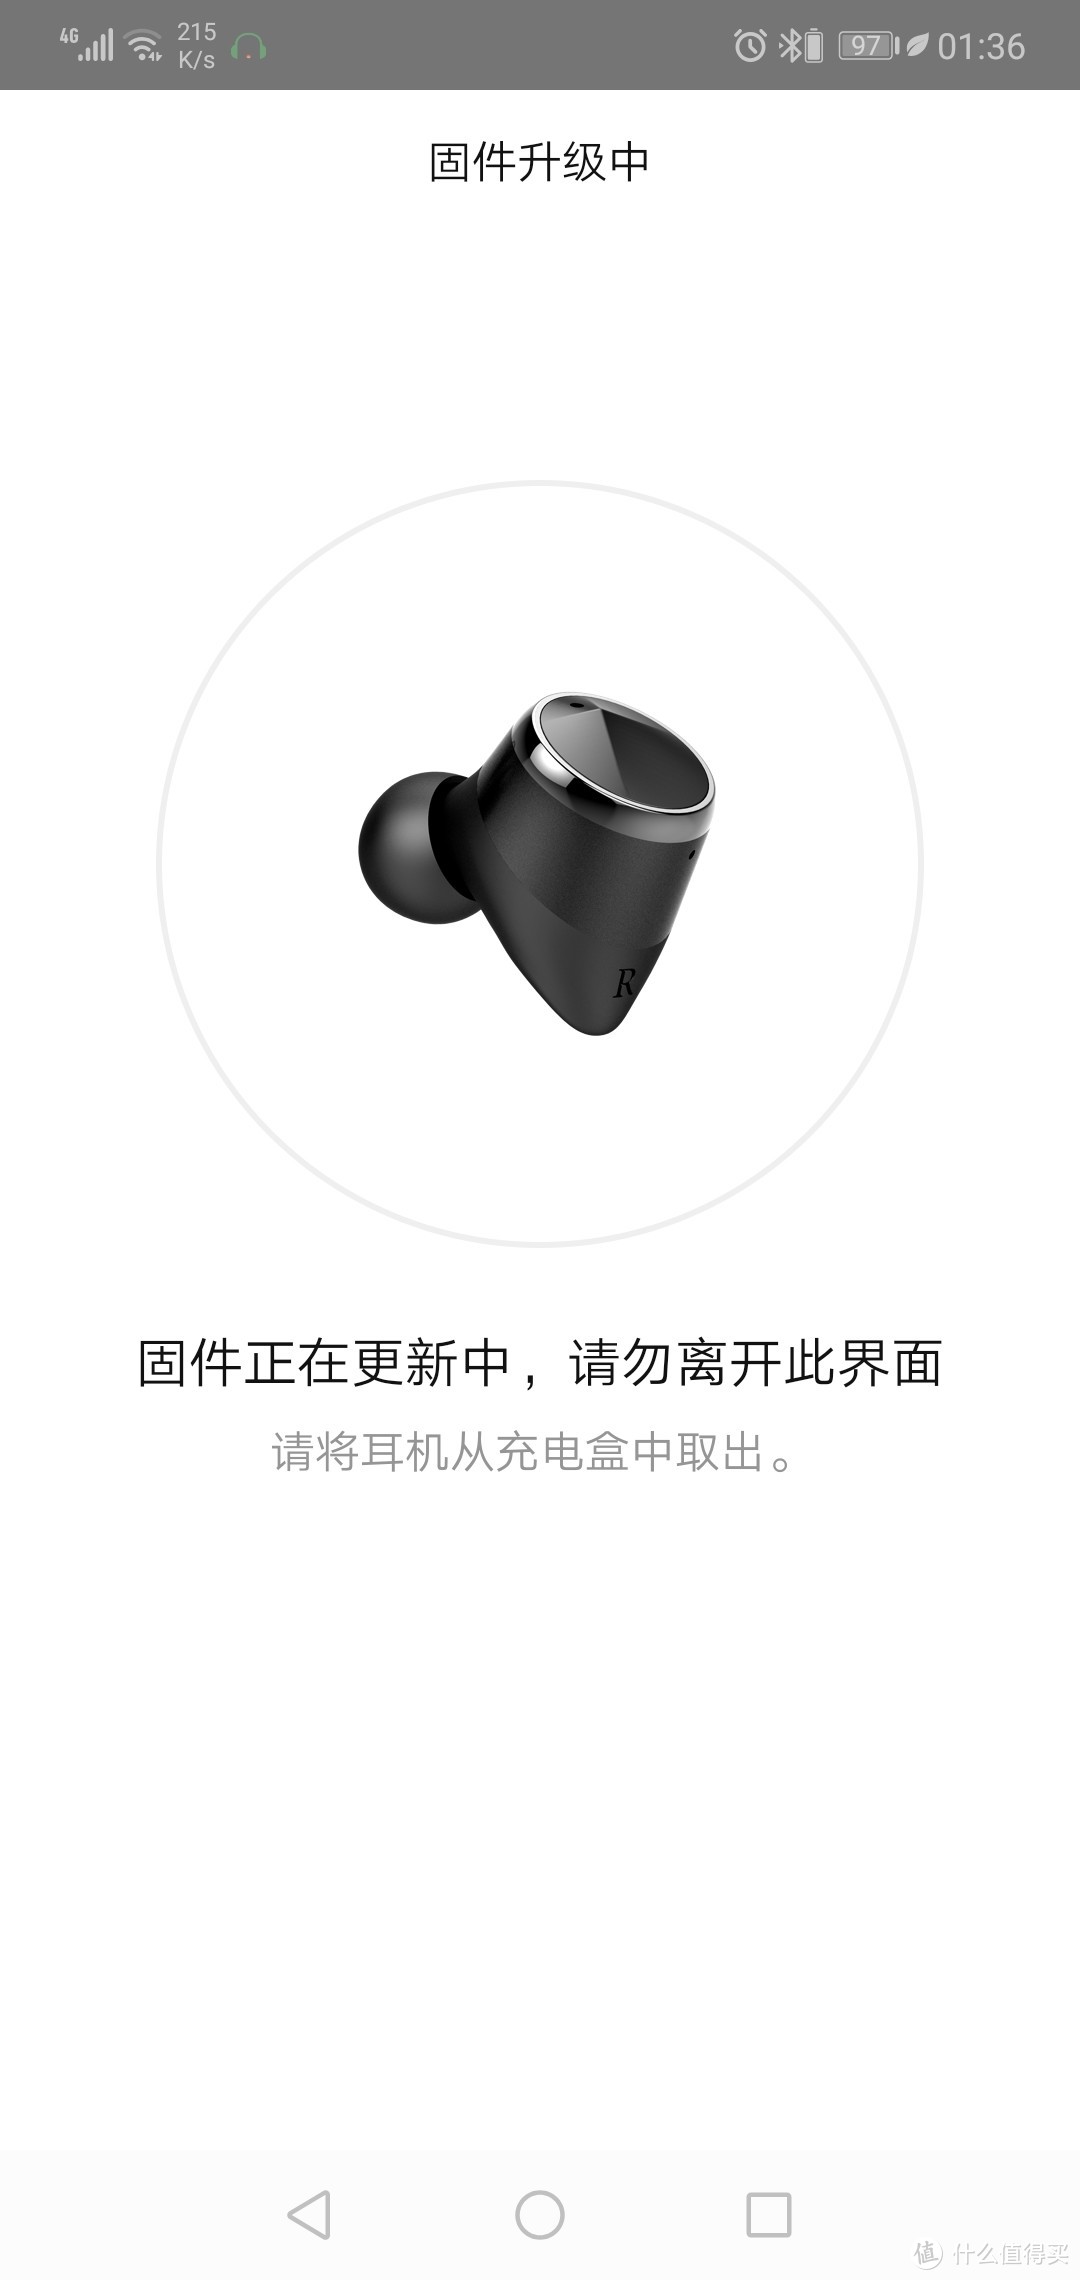 搬砖用户的新装备——JEET Air Plus蓝牙耳机